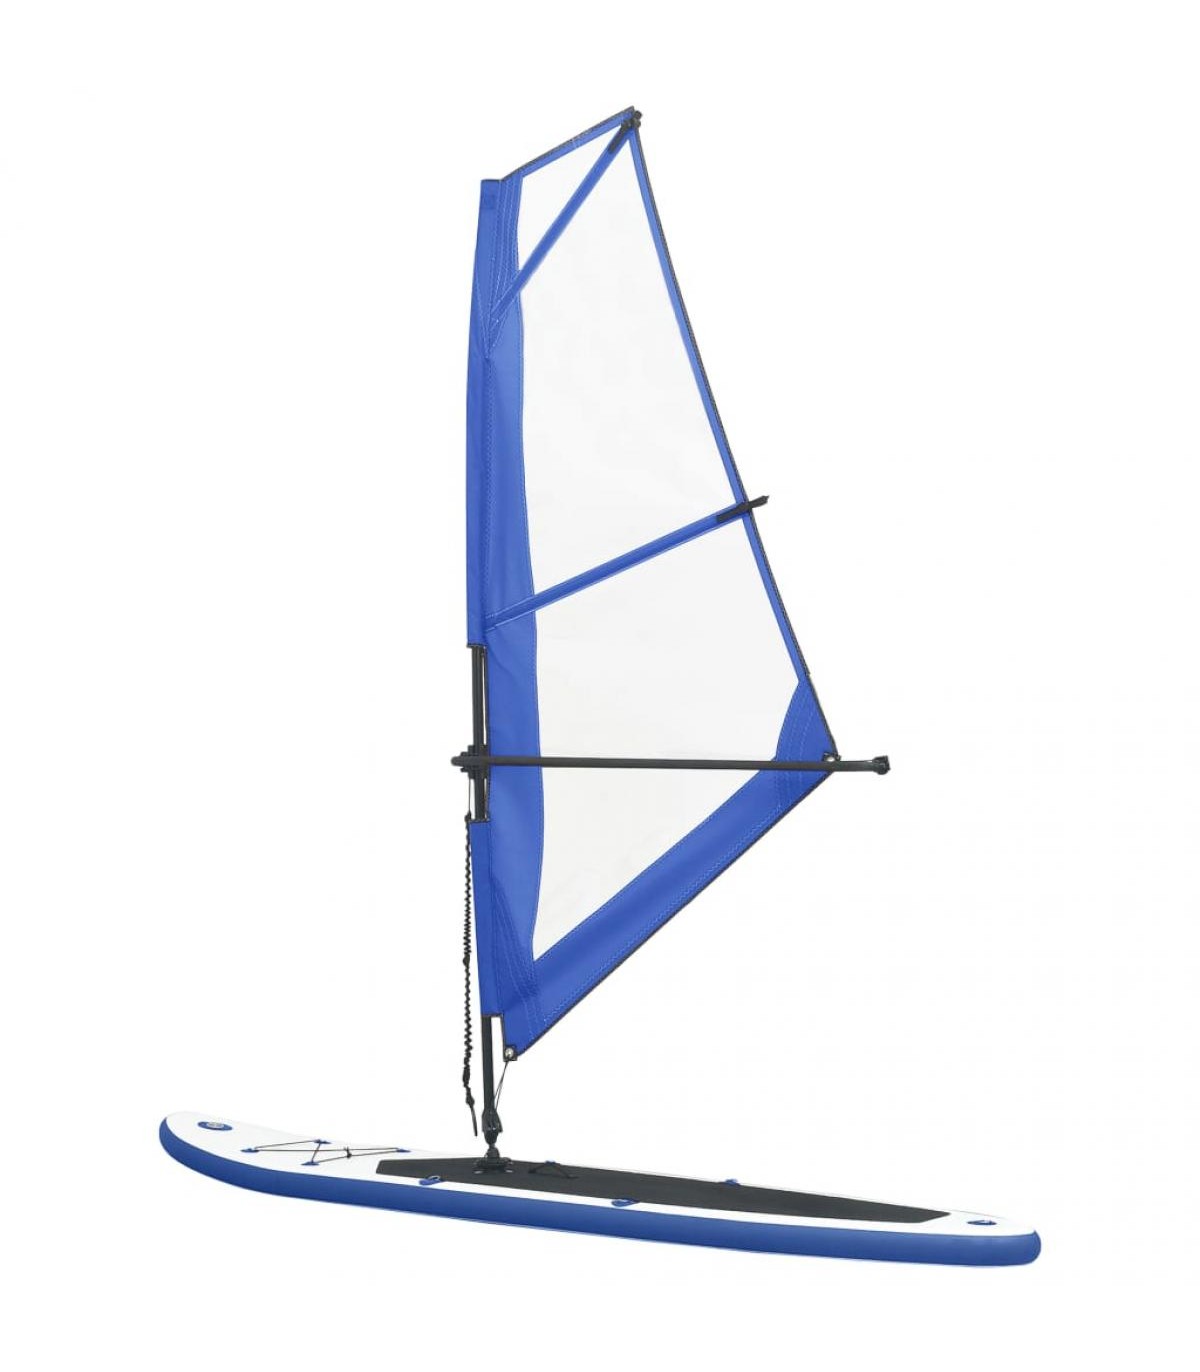 Juego de tabla de paddle surf hinchable fabricado en PVC EVA y aluminio de  76x305 cm con acabado naranja Vida XL